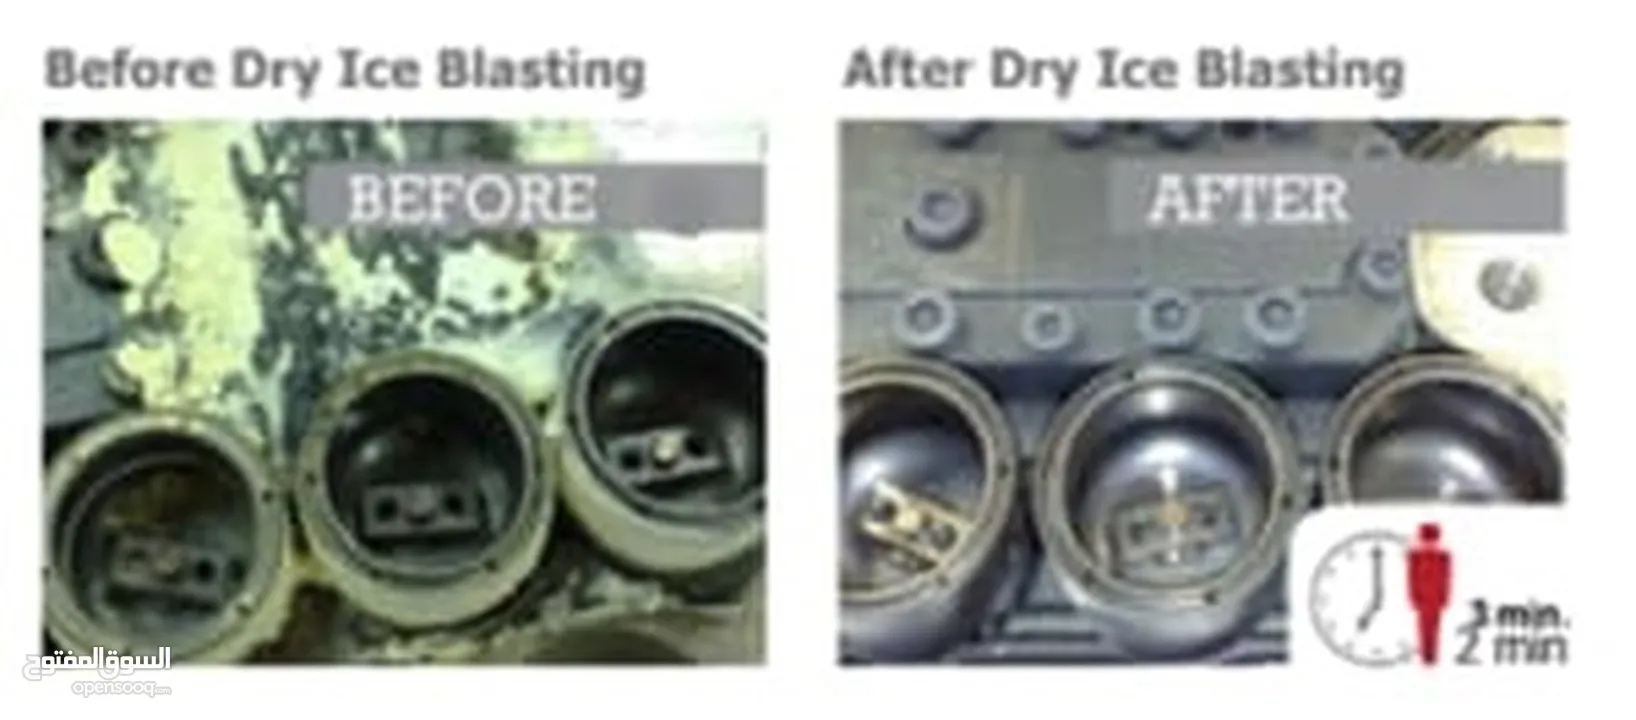 التنظيف ( القذف ) بالثلج الجاف للأجهزة والماكينات والسيارات